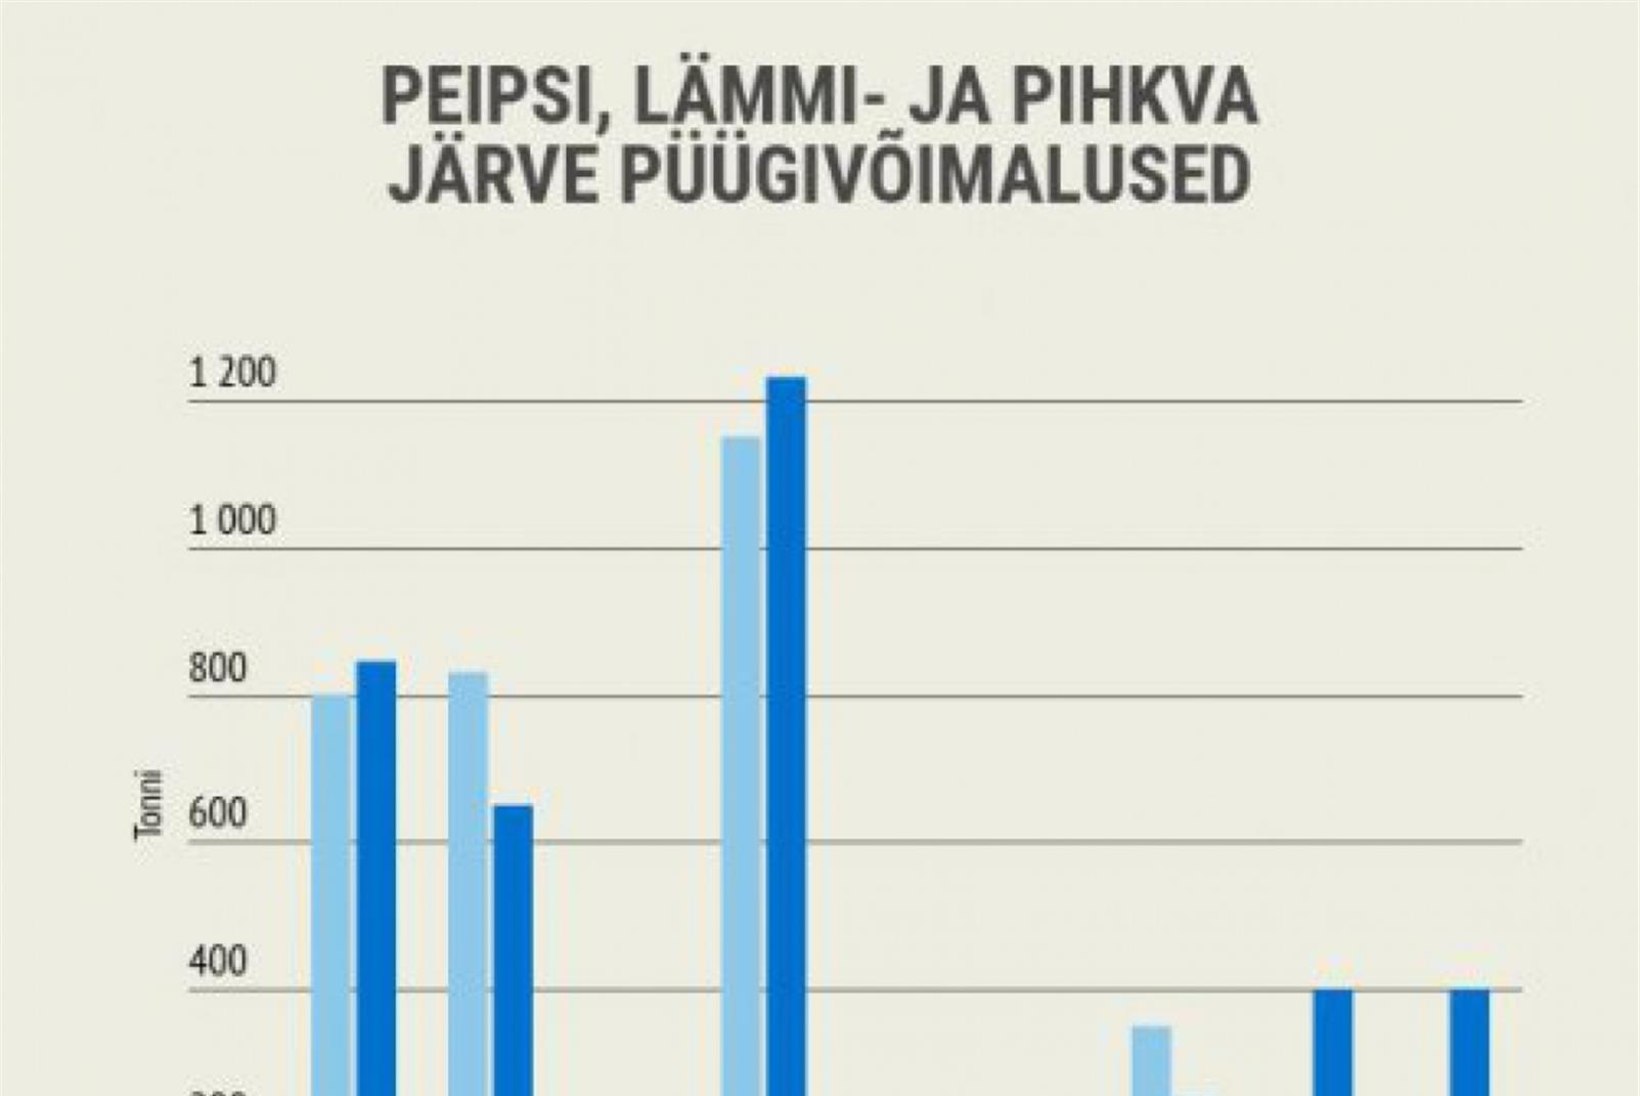 Kinnitati püügikitsendused 2018. aastaks Peipsi, Lämmi ja Pihkva järvel